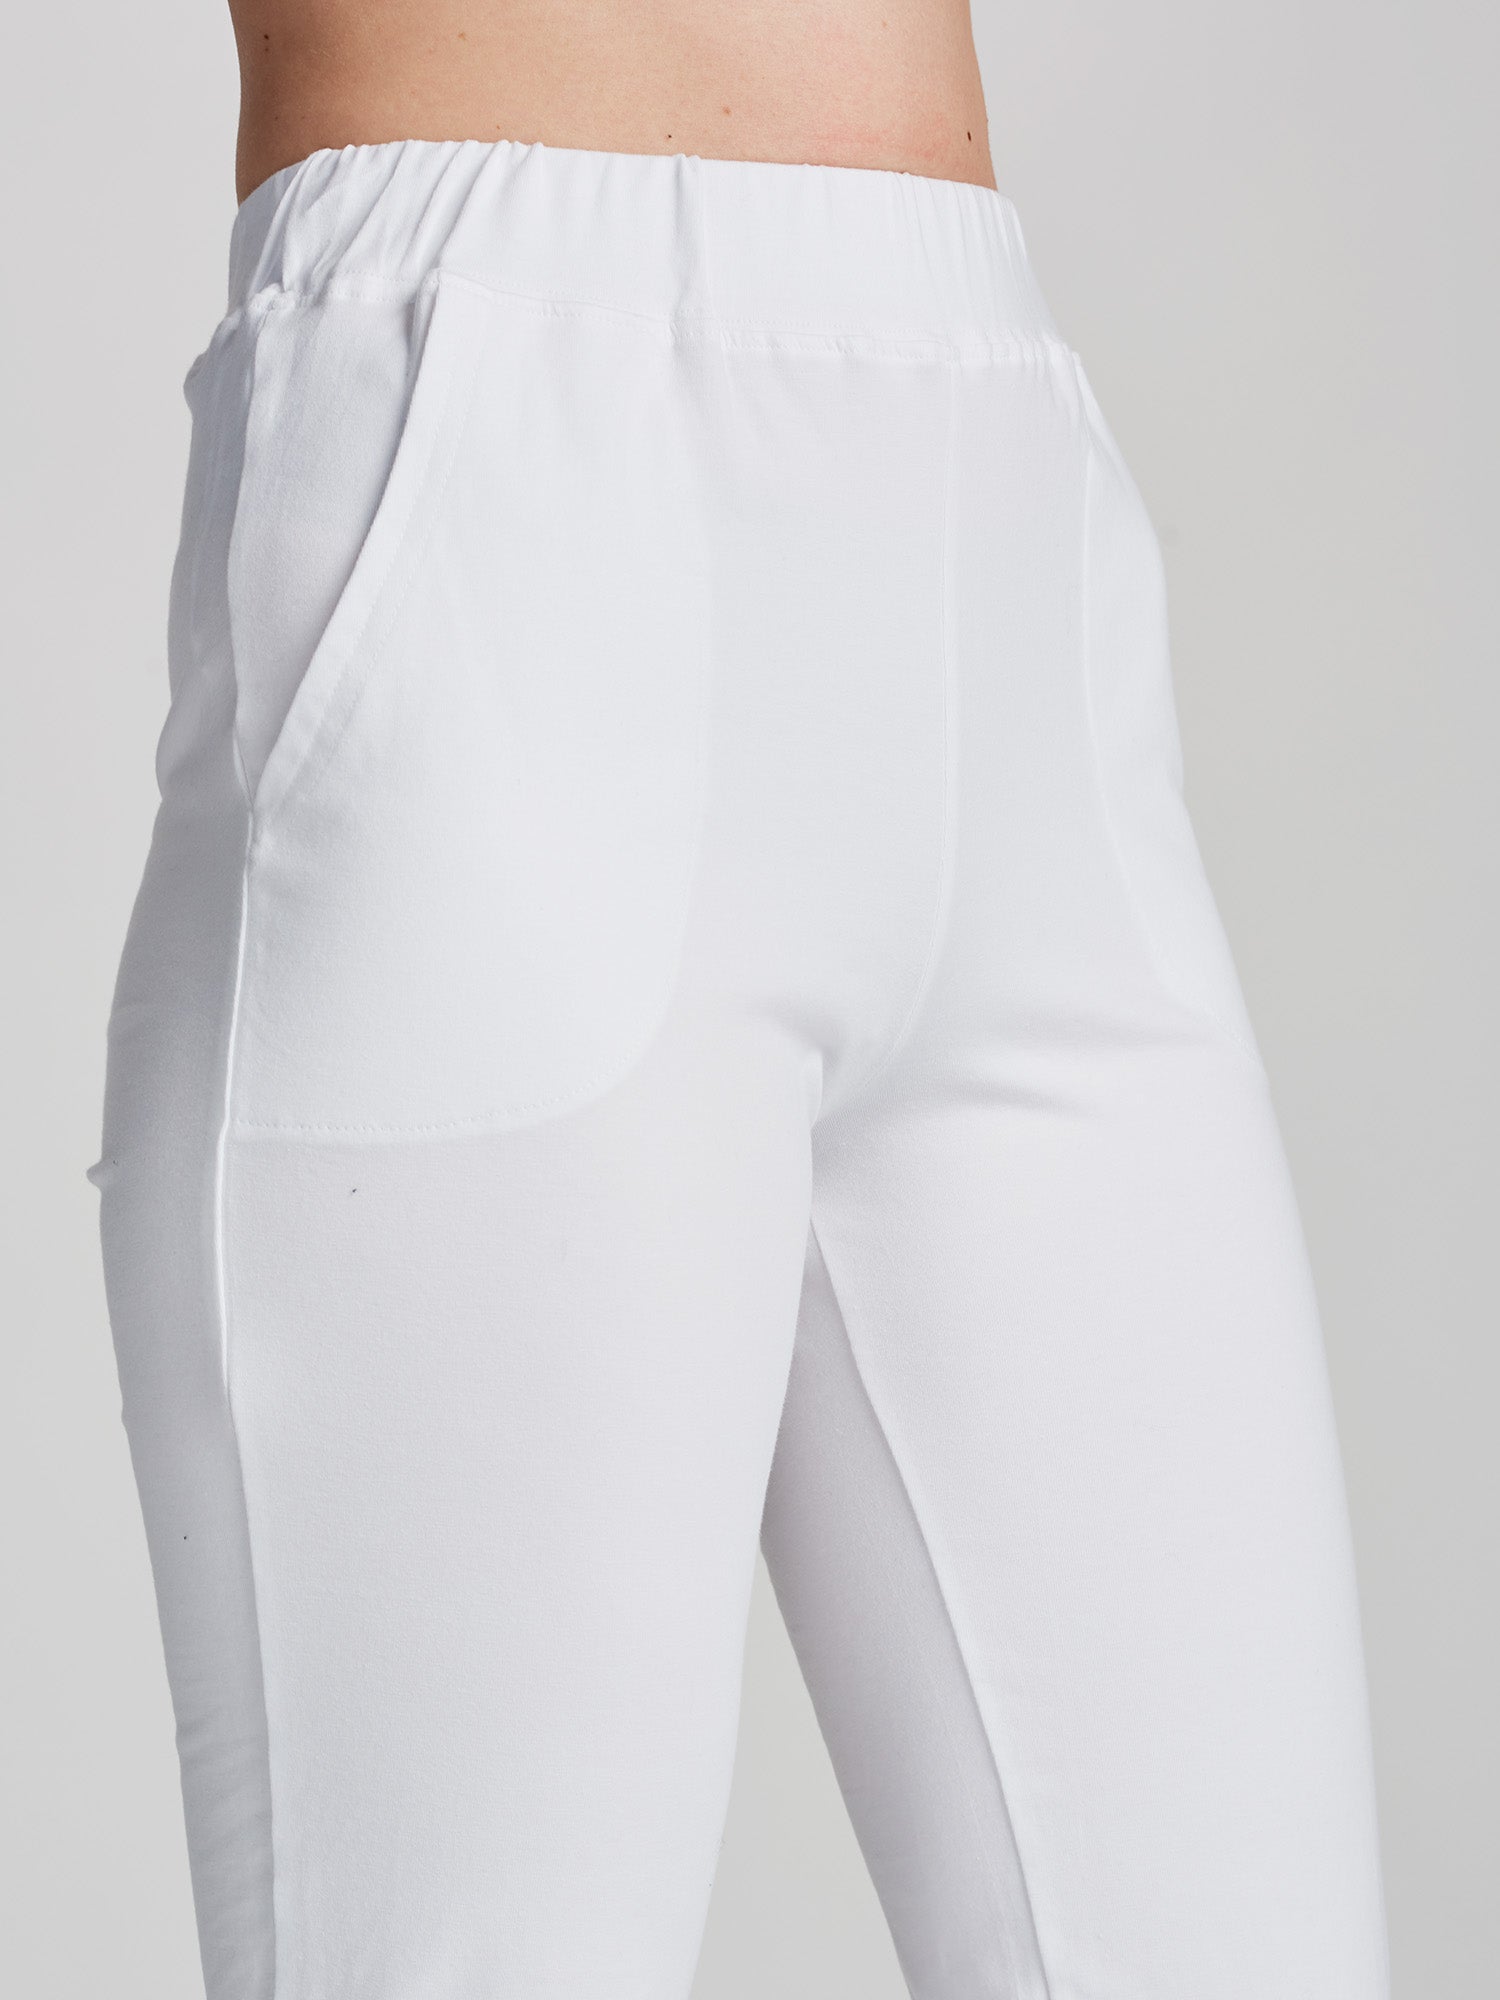 Naisten joustavat ja mukavat valkoiset Basic-housut.